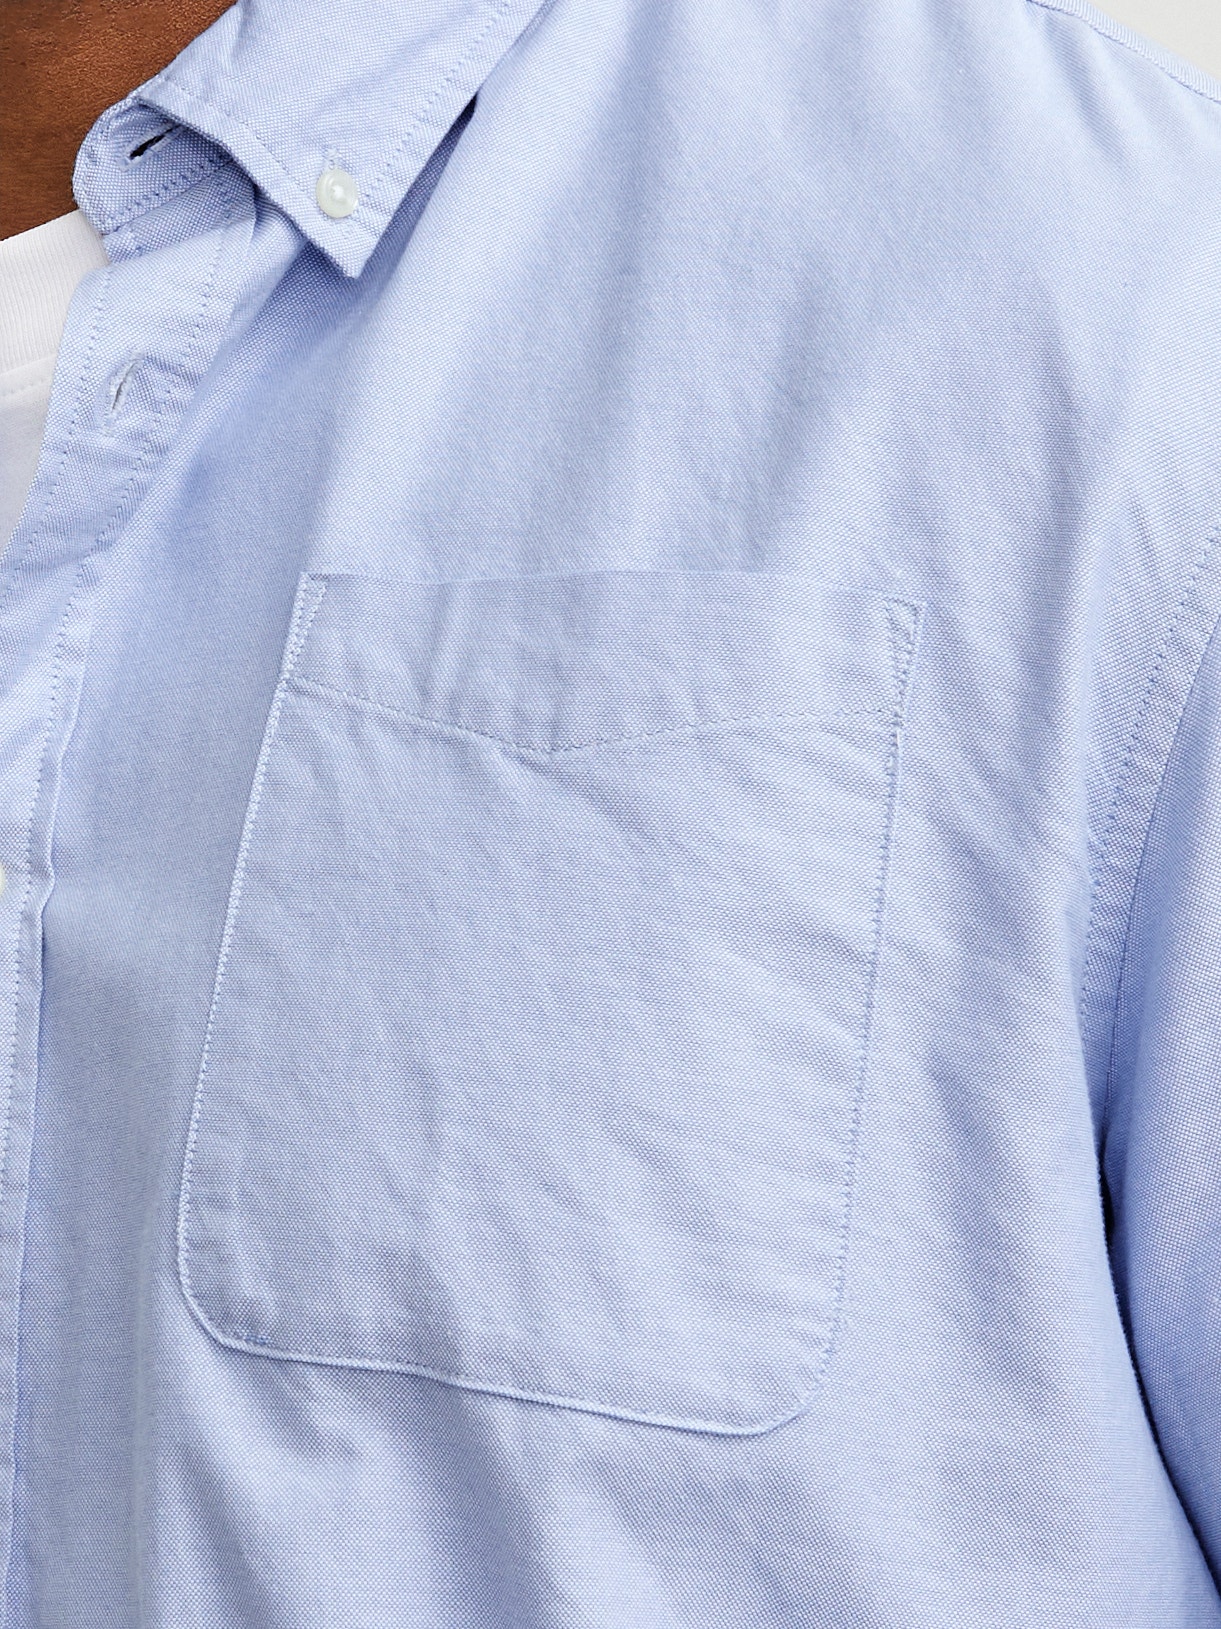 Jack & Jones Plus Size Camisa informal Slim Fit -Cashmere Blue - 12190444